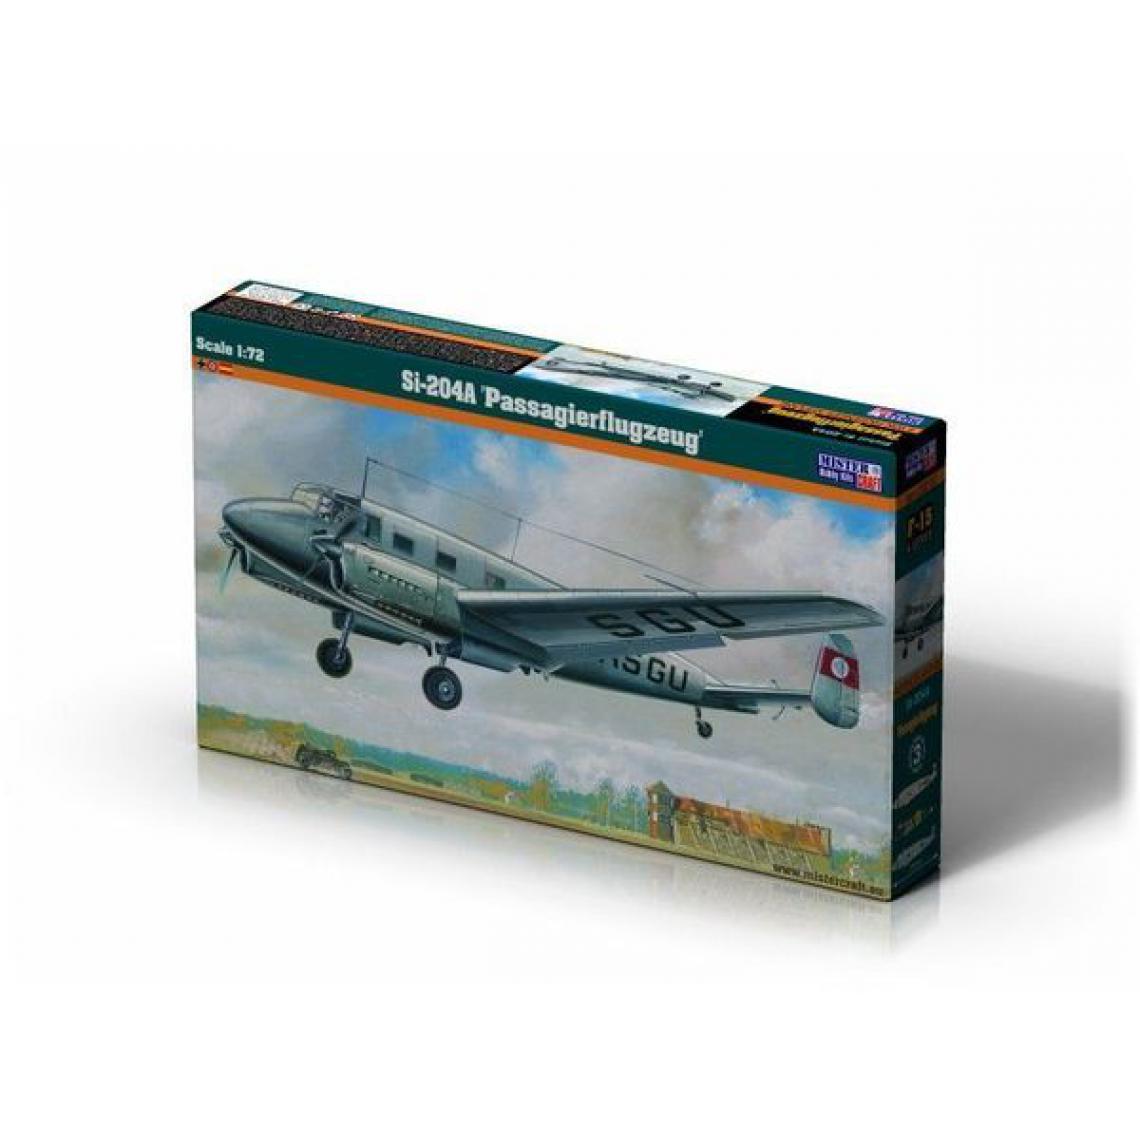 MISTERCRAFT - Si-204A "Passagierflugzeug" - 1:72e - Mistercraft - Accessoires et pièces